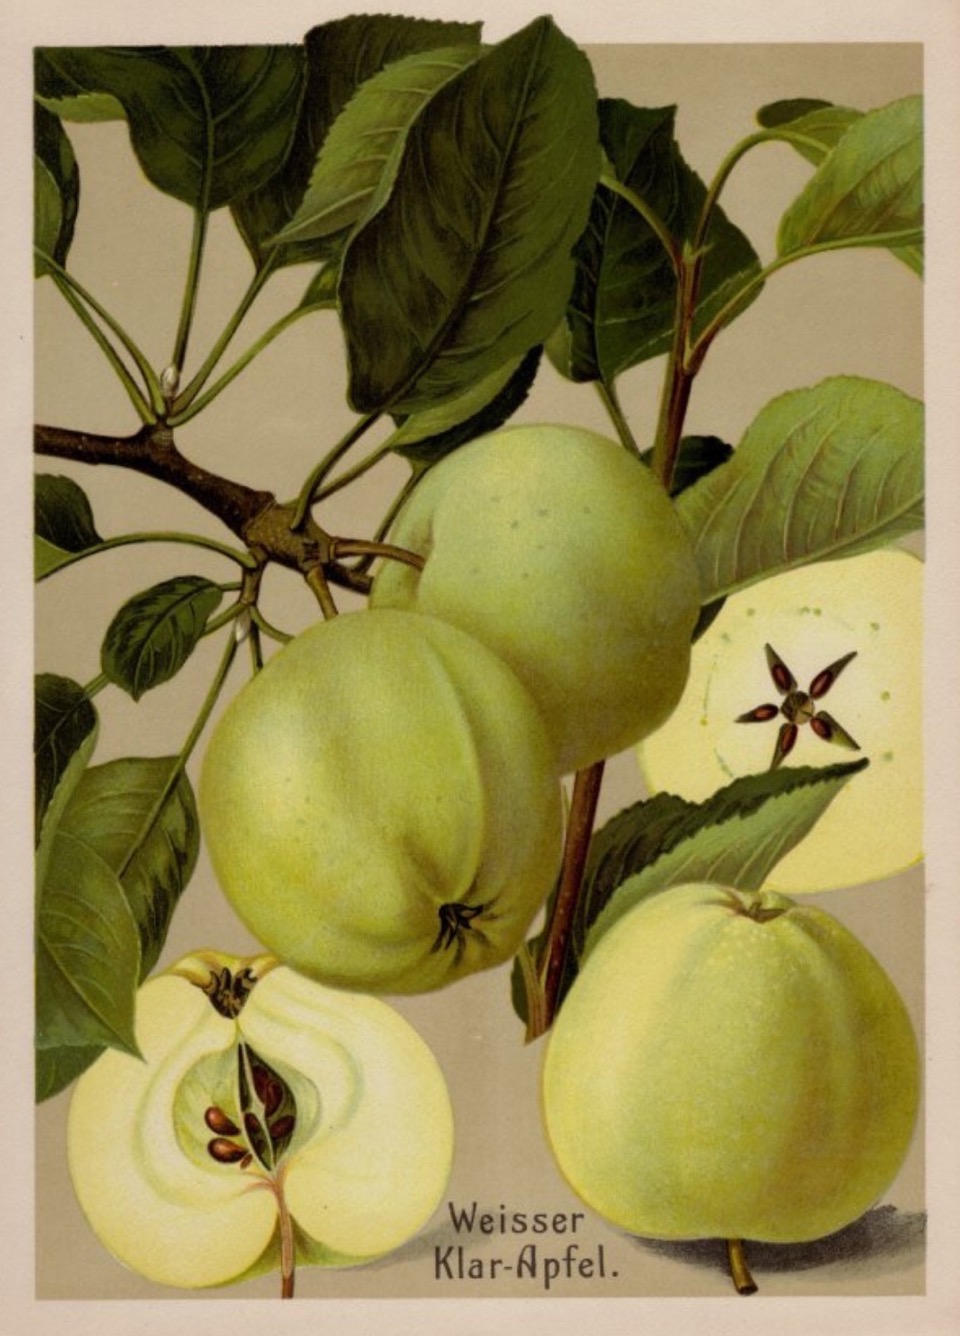 Historische Abbildung von gelblich-grünlichen und aufgeschnittenenee Äpfel mit Zweig und Blättern; BUND Lemgo Obstsortendatenbank